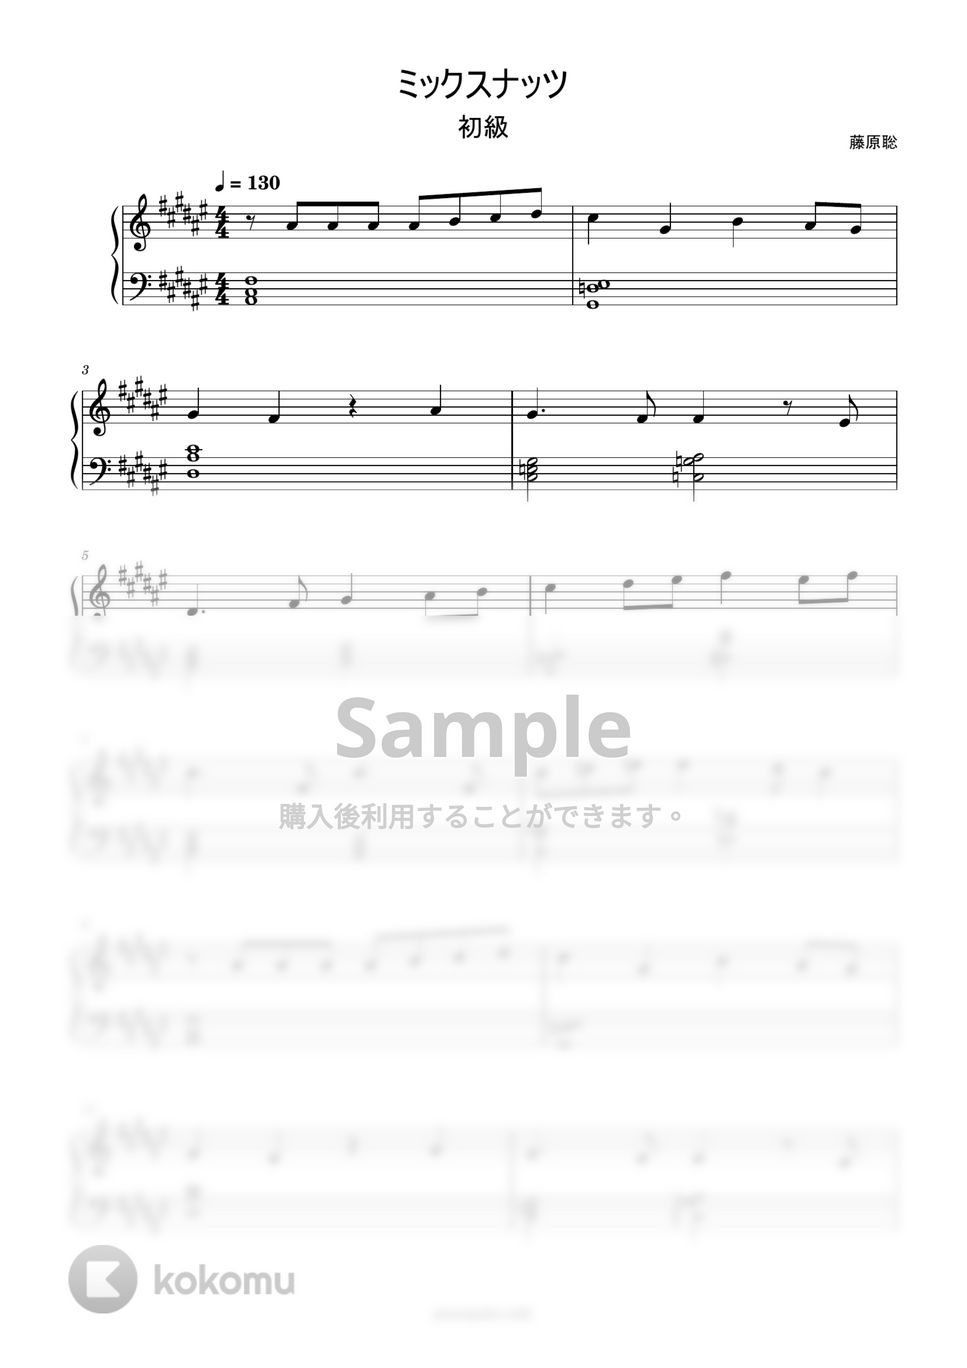 Official髭男dism - ミックスナッツ (和音で弾くミックスナッツ) by ピアノ塾